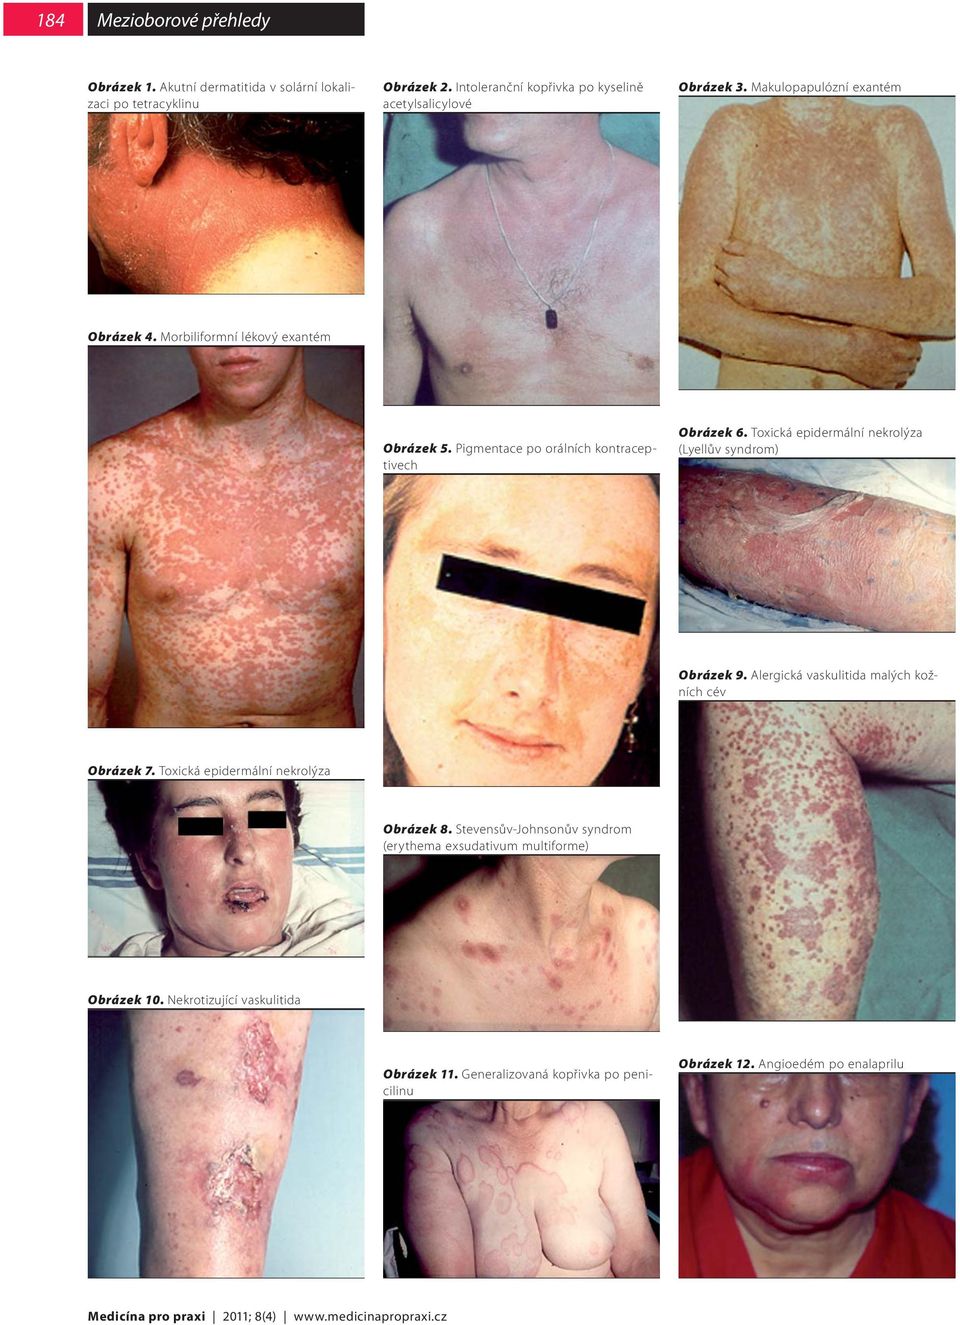 Toxická epidermální nekrolýza (Lyellův syndrom) Obrázek 9. Alergická vaskulitida malých kožních cév Obrázek 7. Toxická epidermální nekrolýza Obrázek 8.